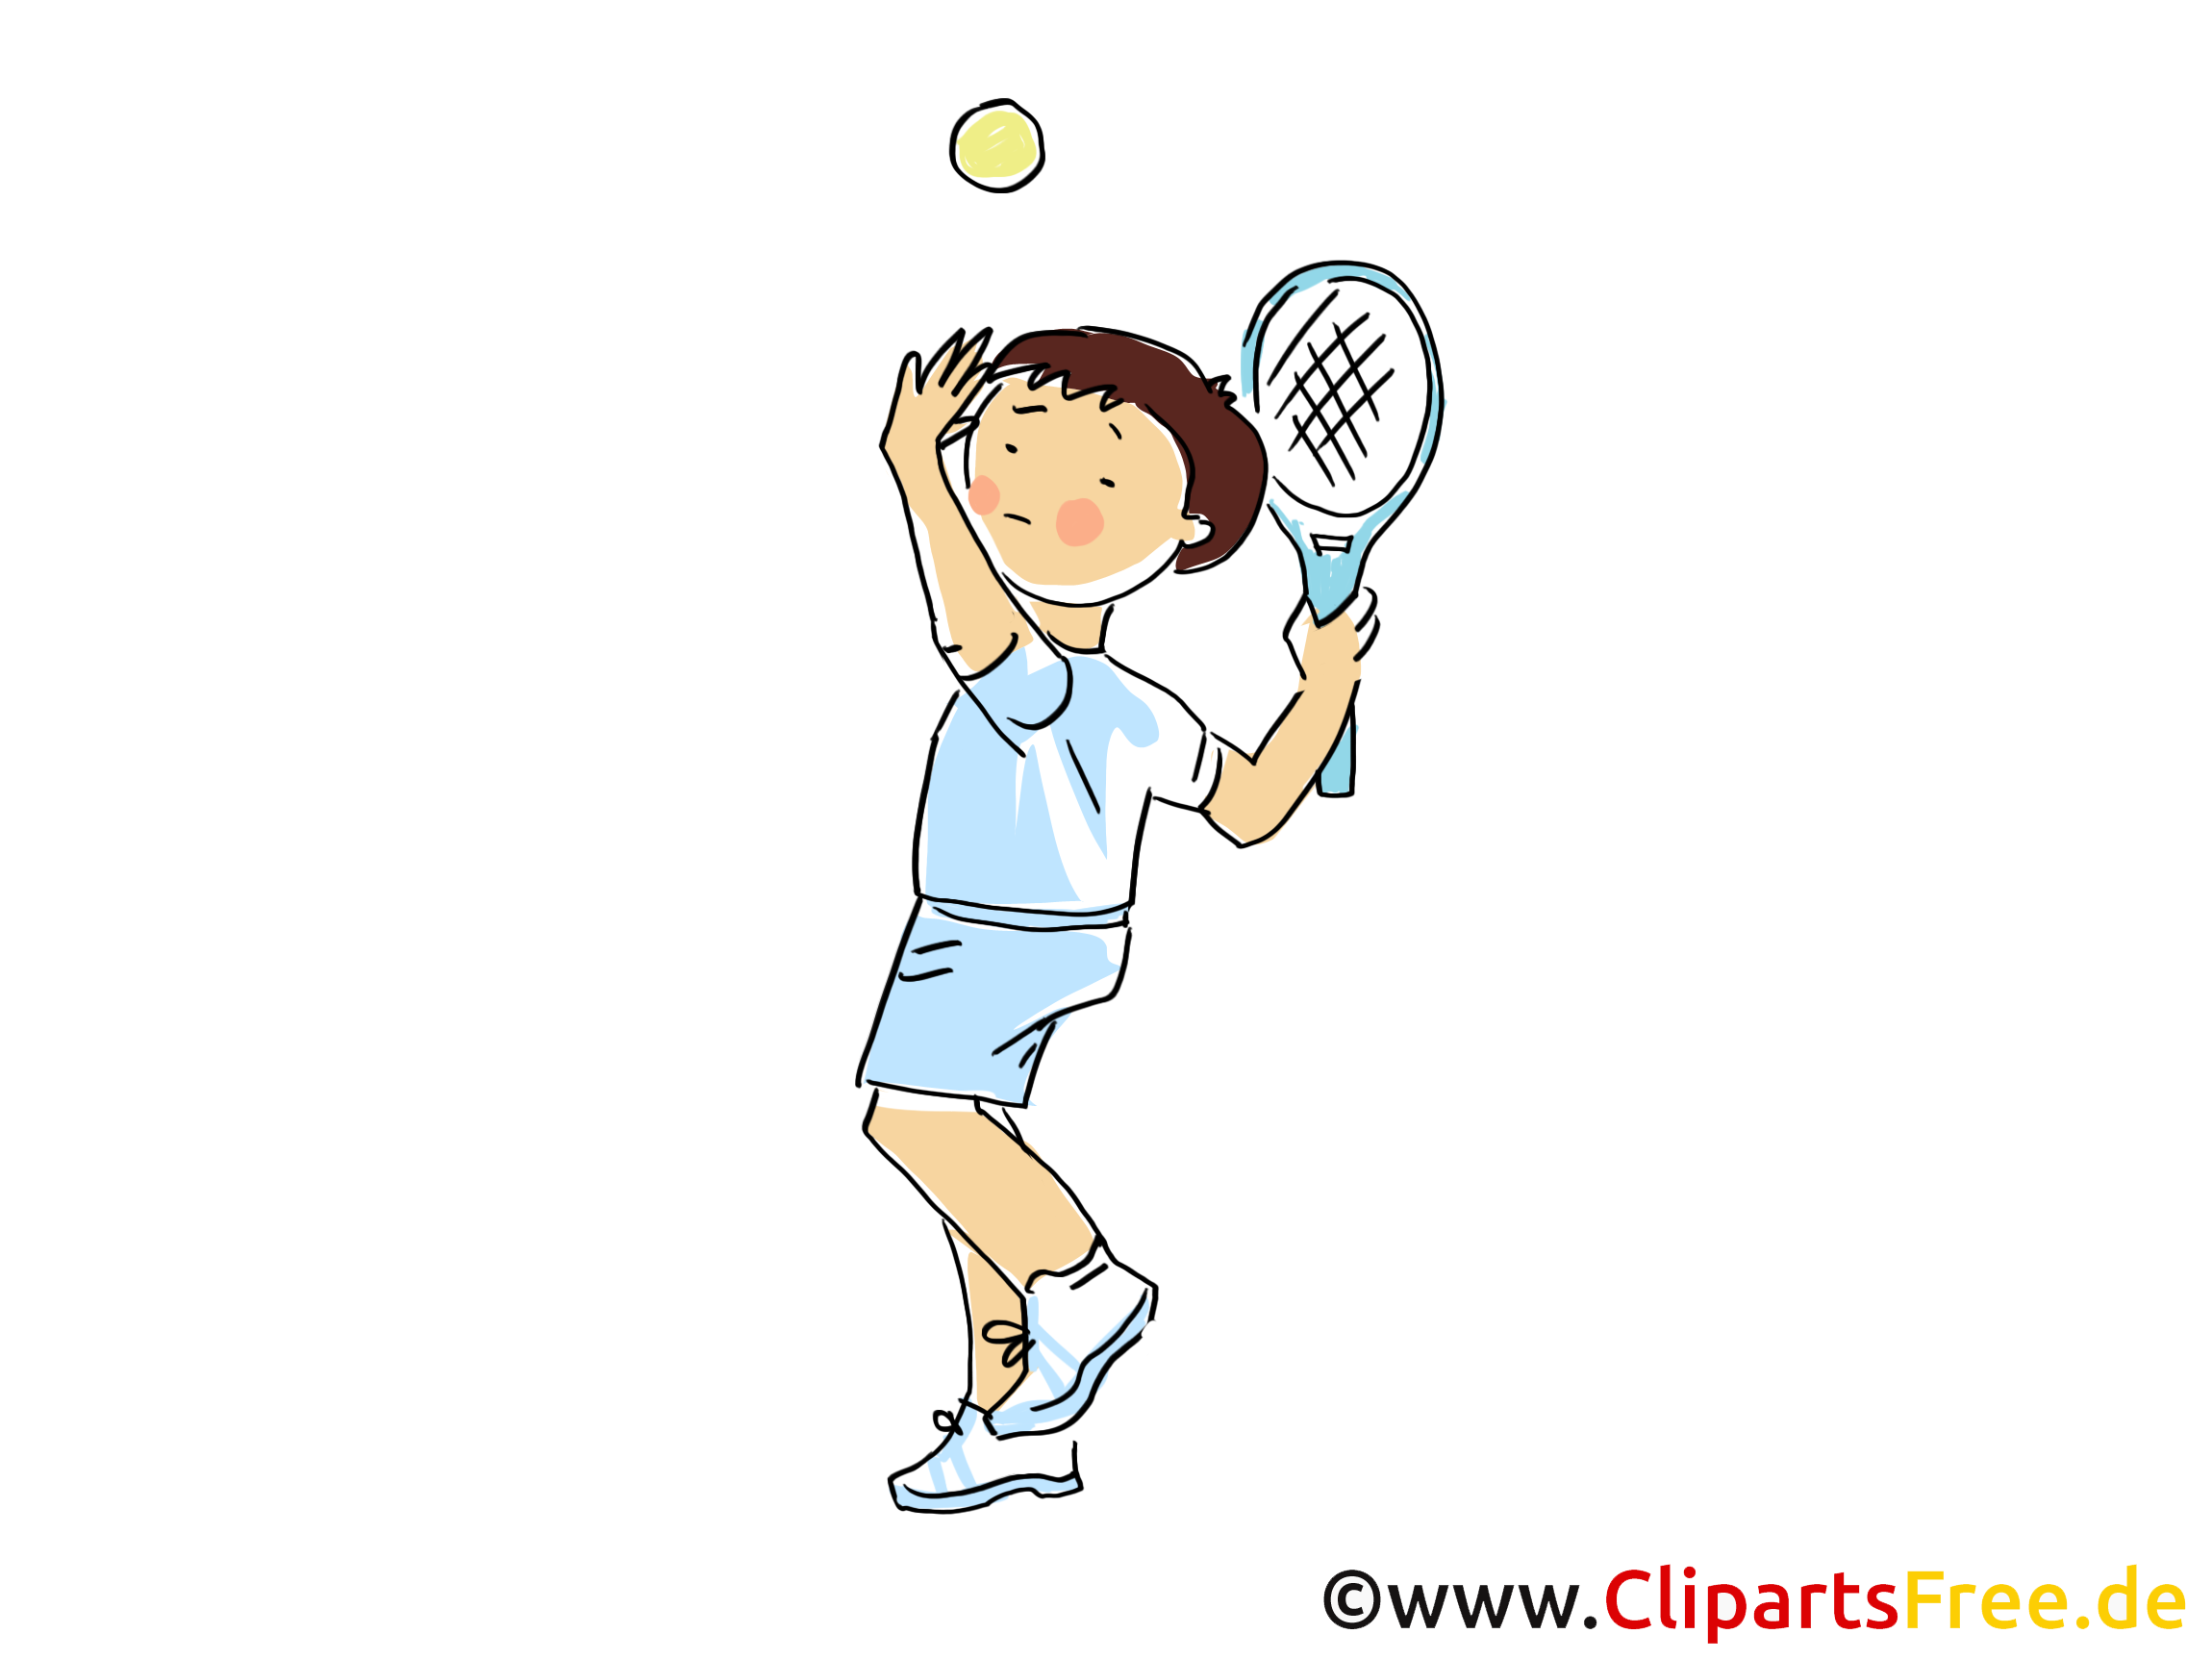 clipart kostenlos tennis - photo #9